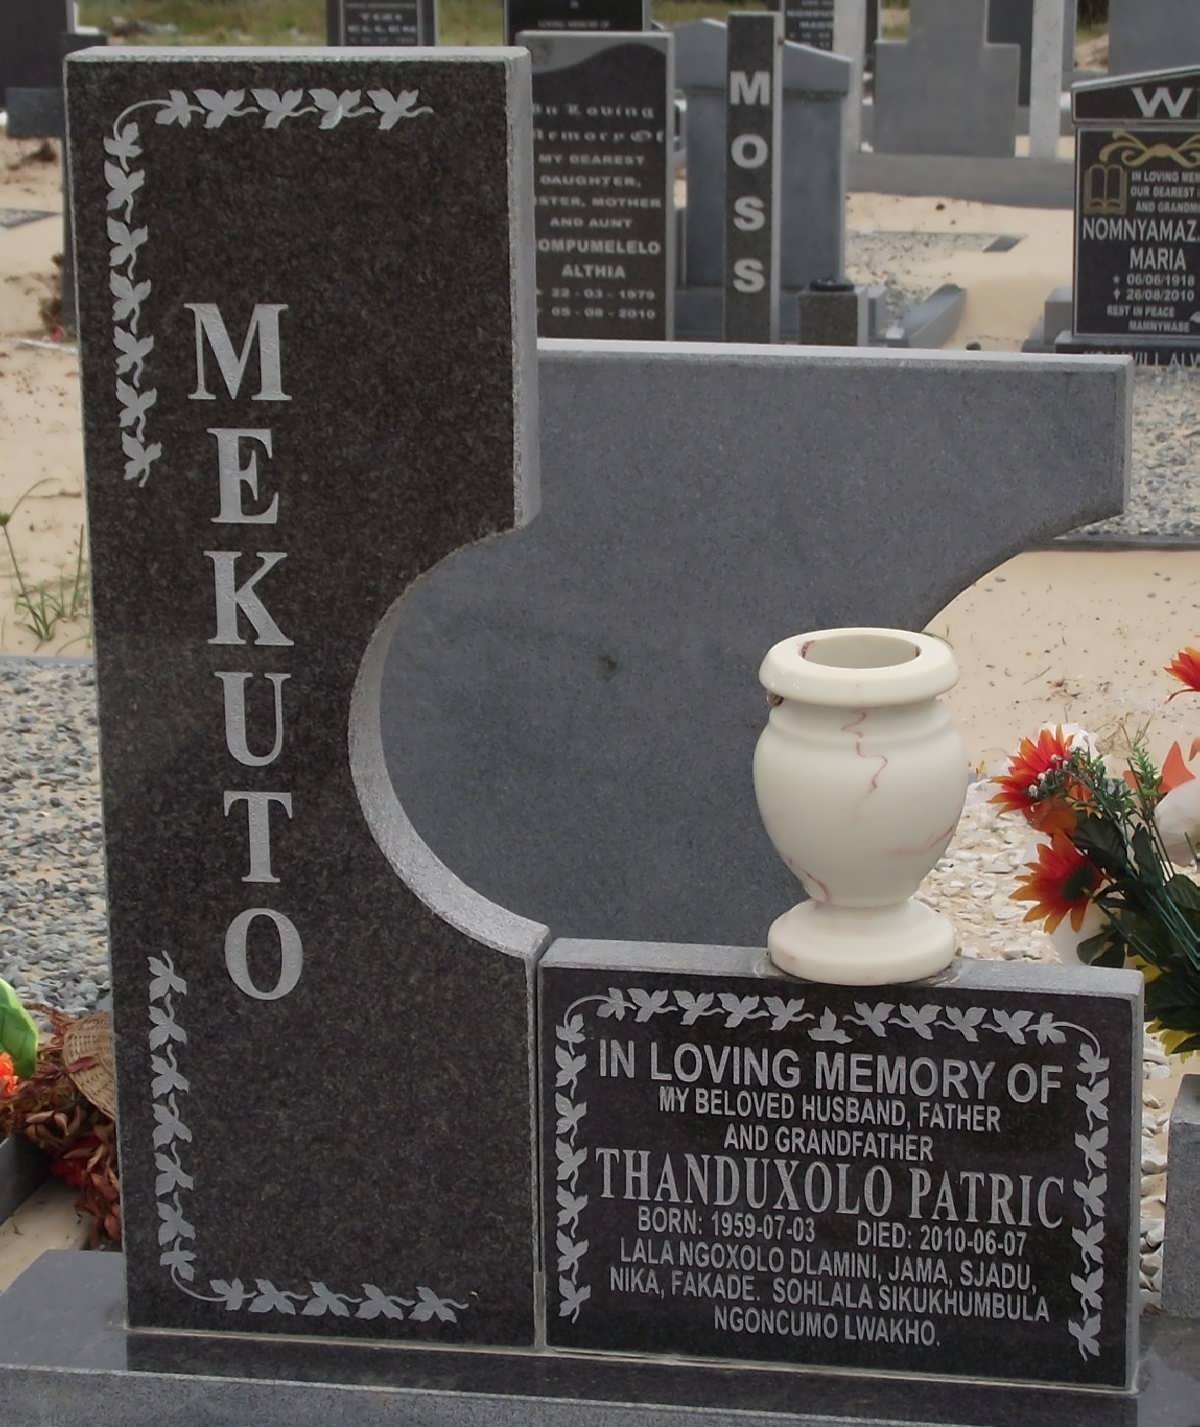 MEKUTO Thanduxolo Patric 1959-2010